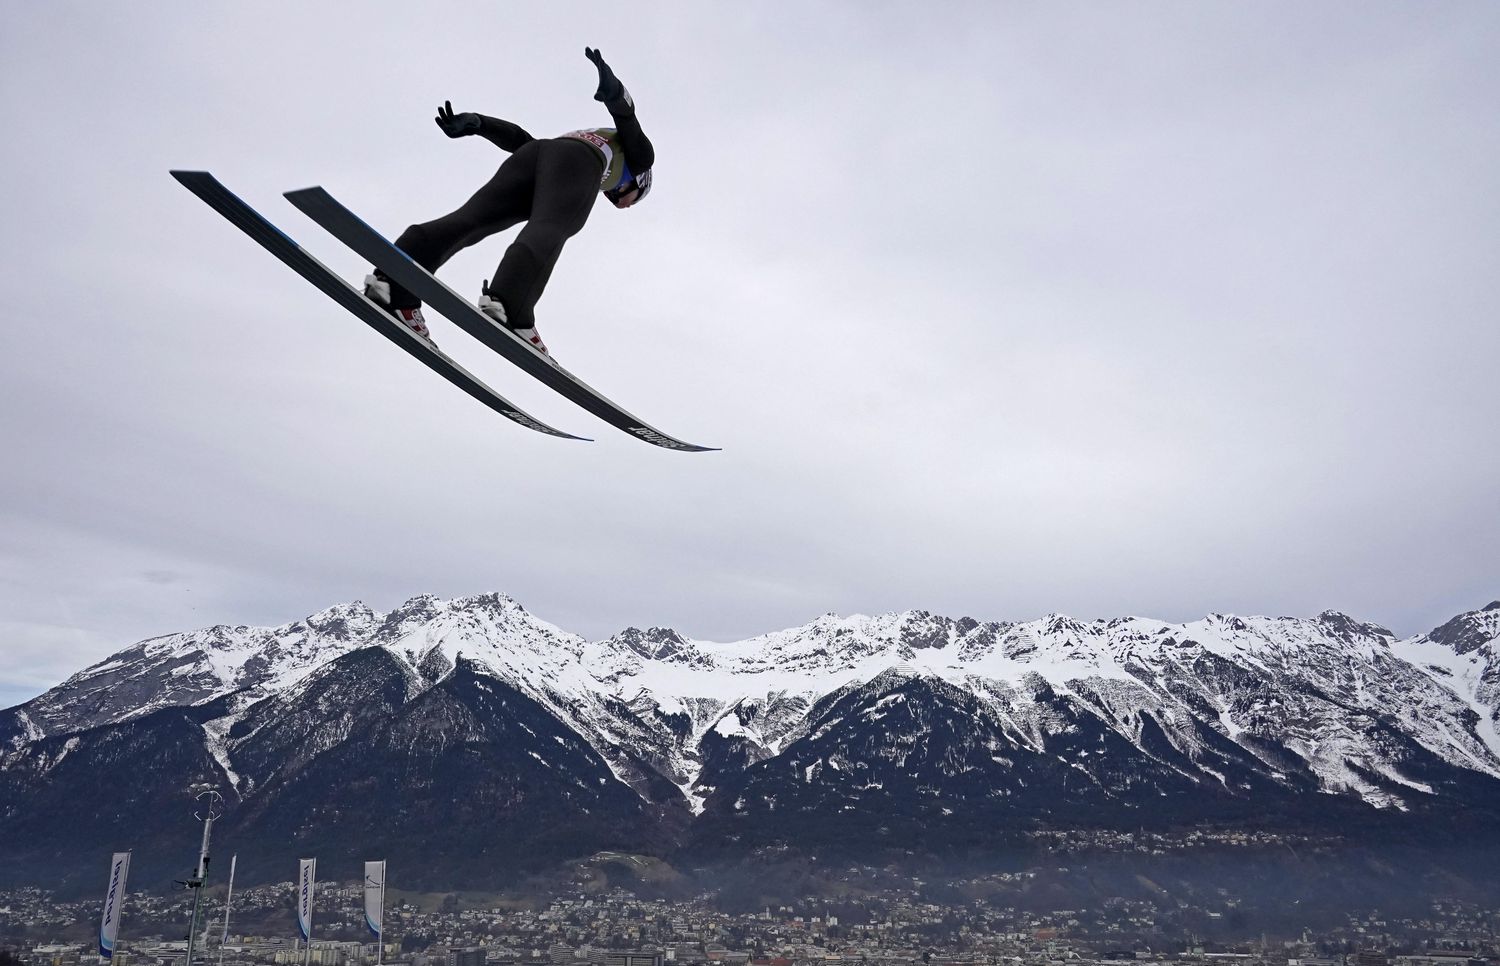 Competidor treina salto para o torneio Four Hills, na Áustria.